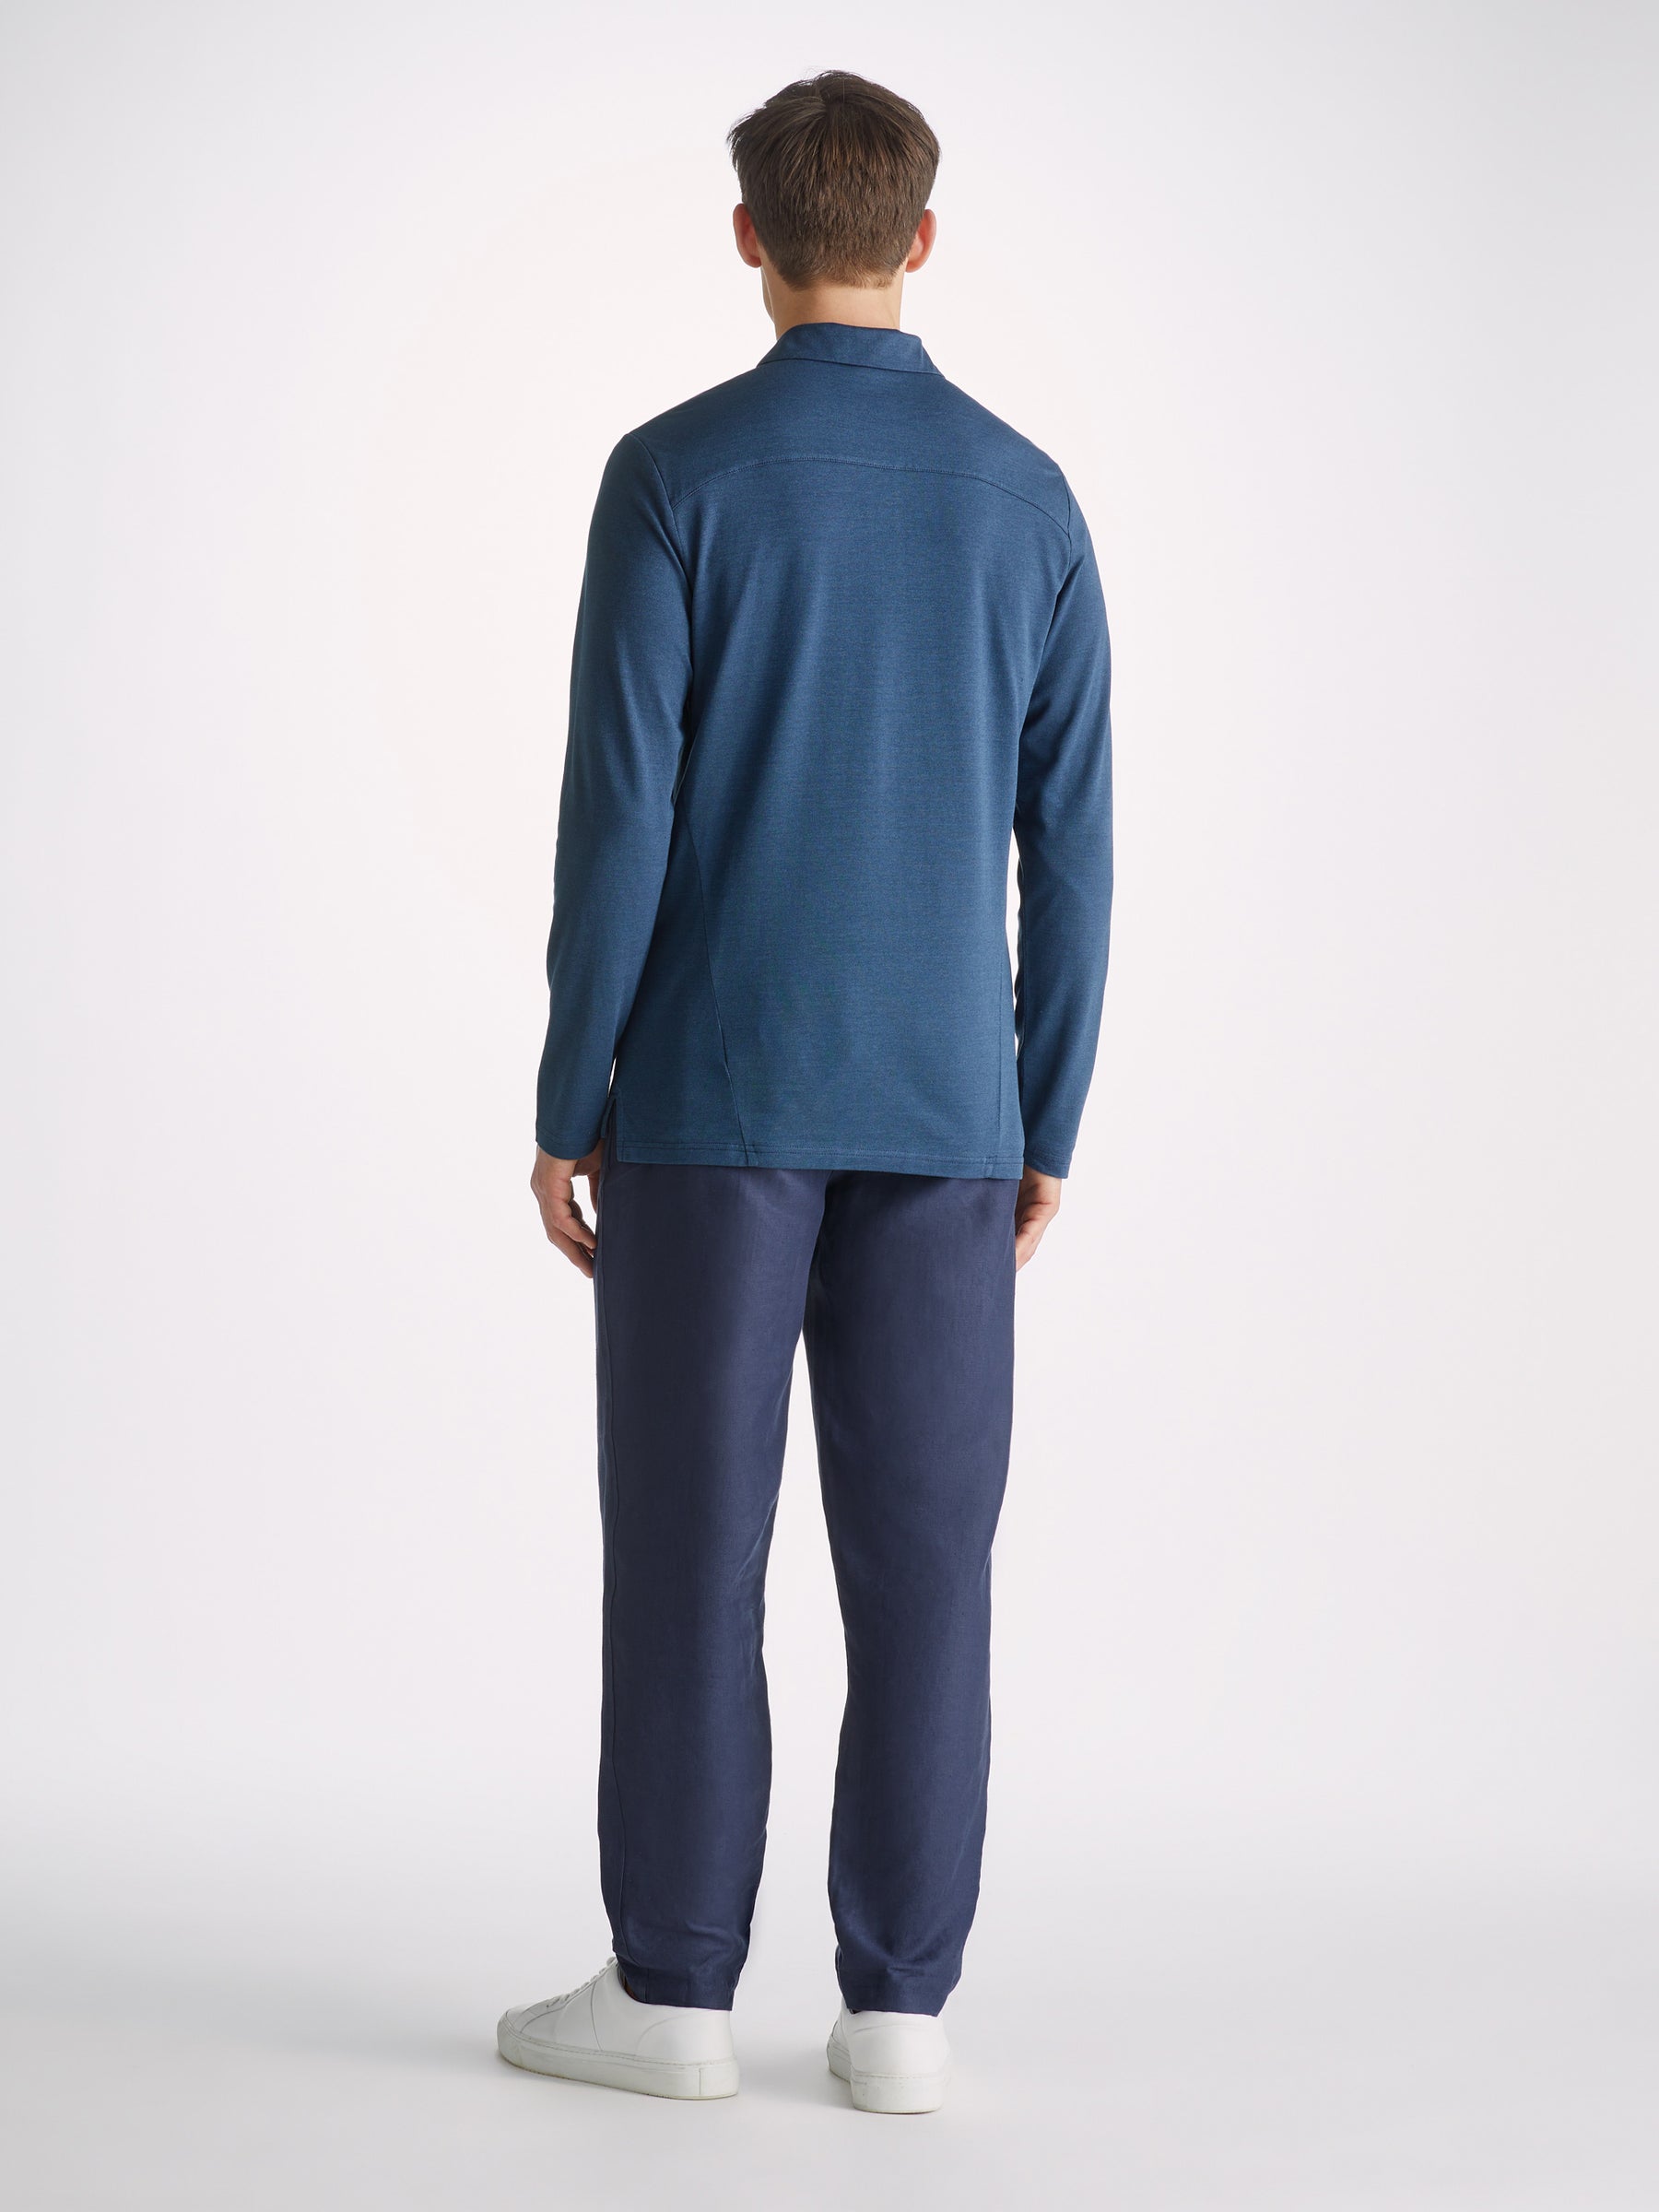 Men's Long Sleeve Polo Shirt Ramsay 2 Pique Cotton Tencel Denim